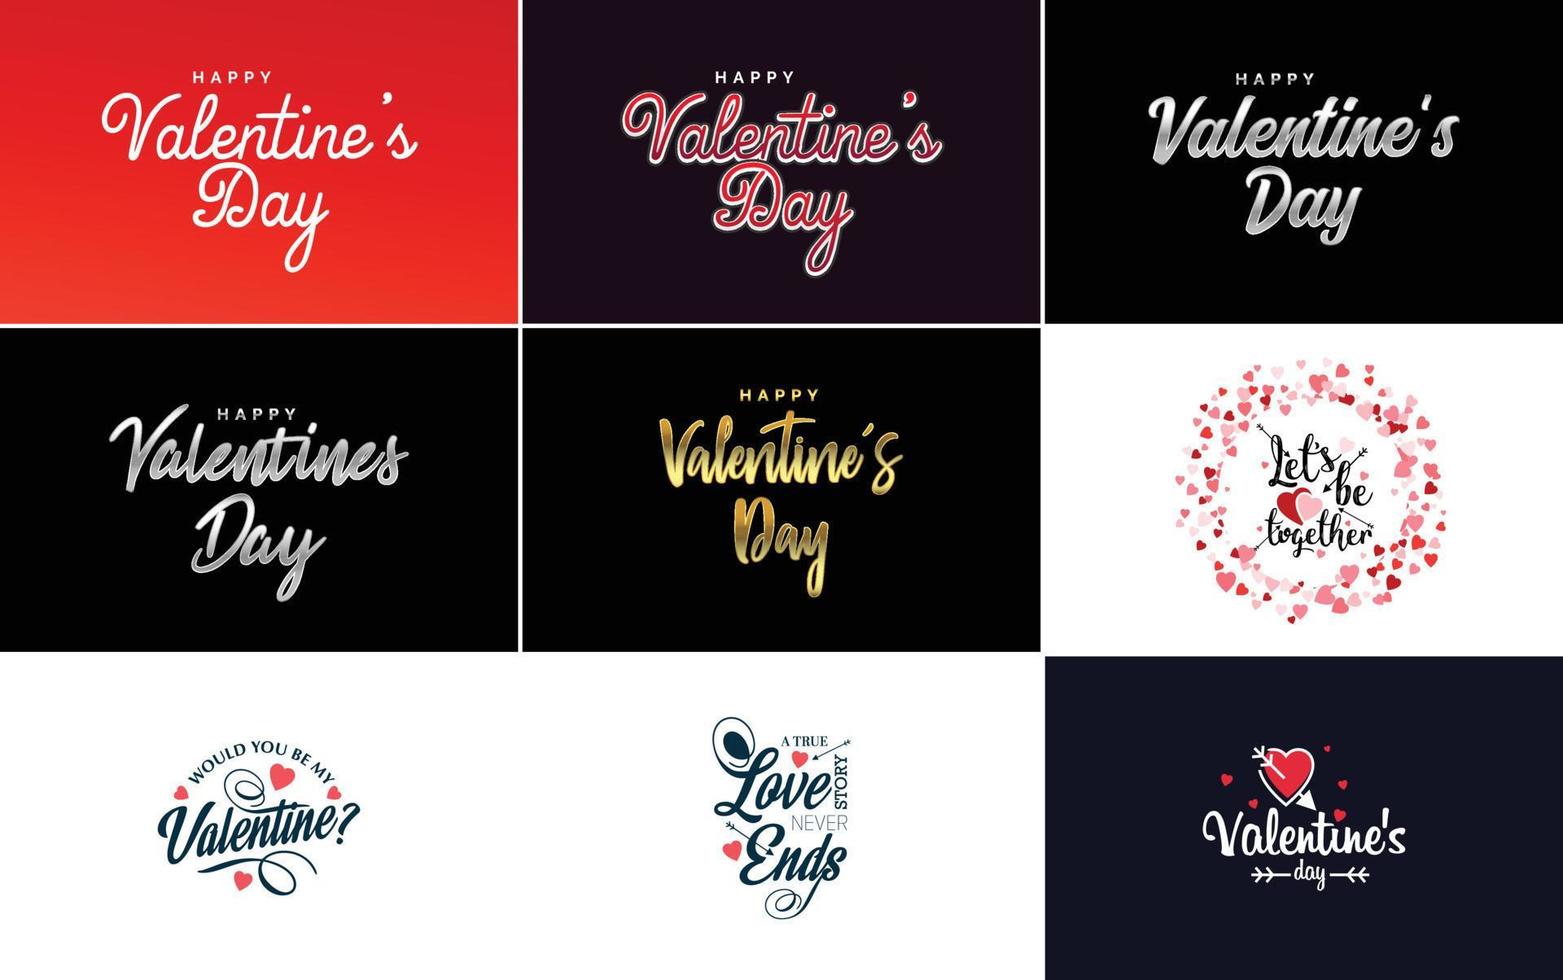 Happy Valentine's Day Grußkartenvorlage mit einem romantischen Thema und einem roten Farbschema vektor